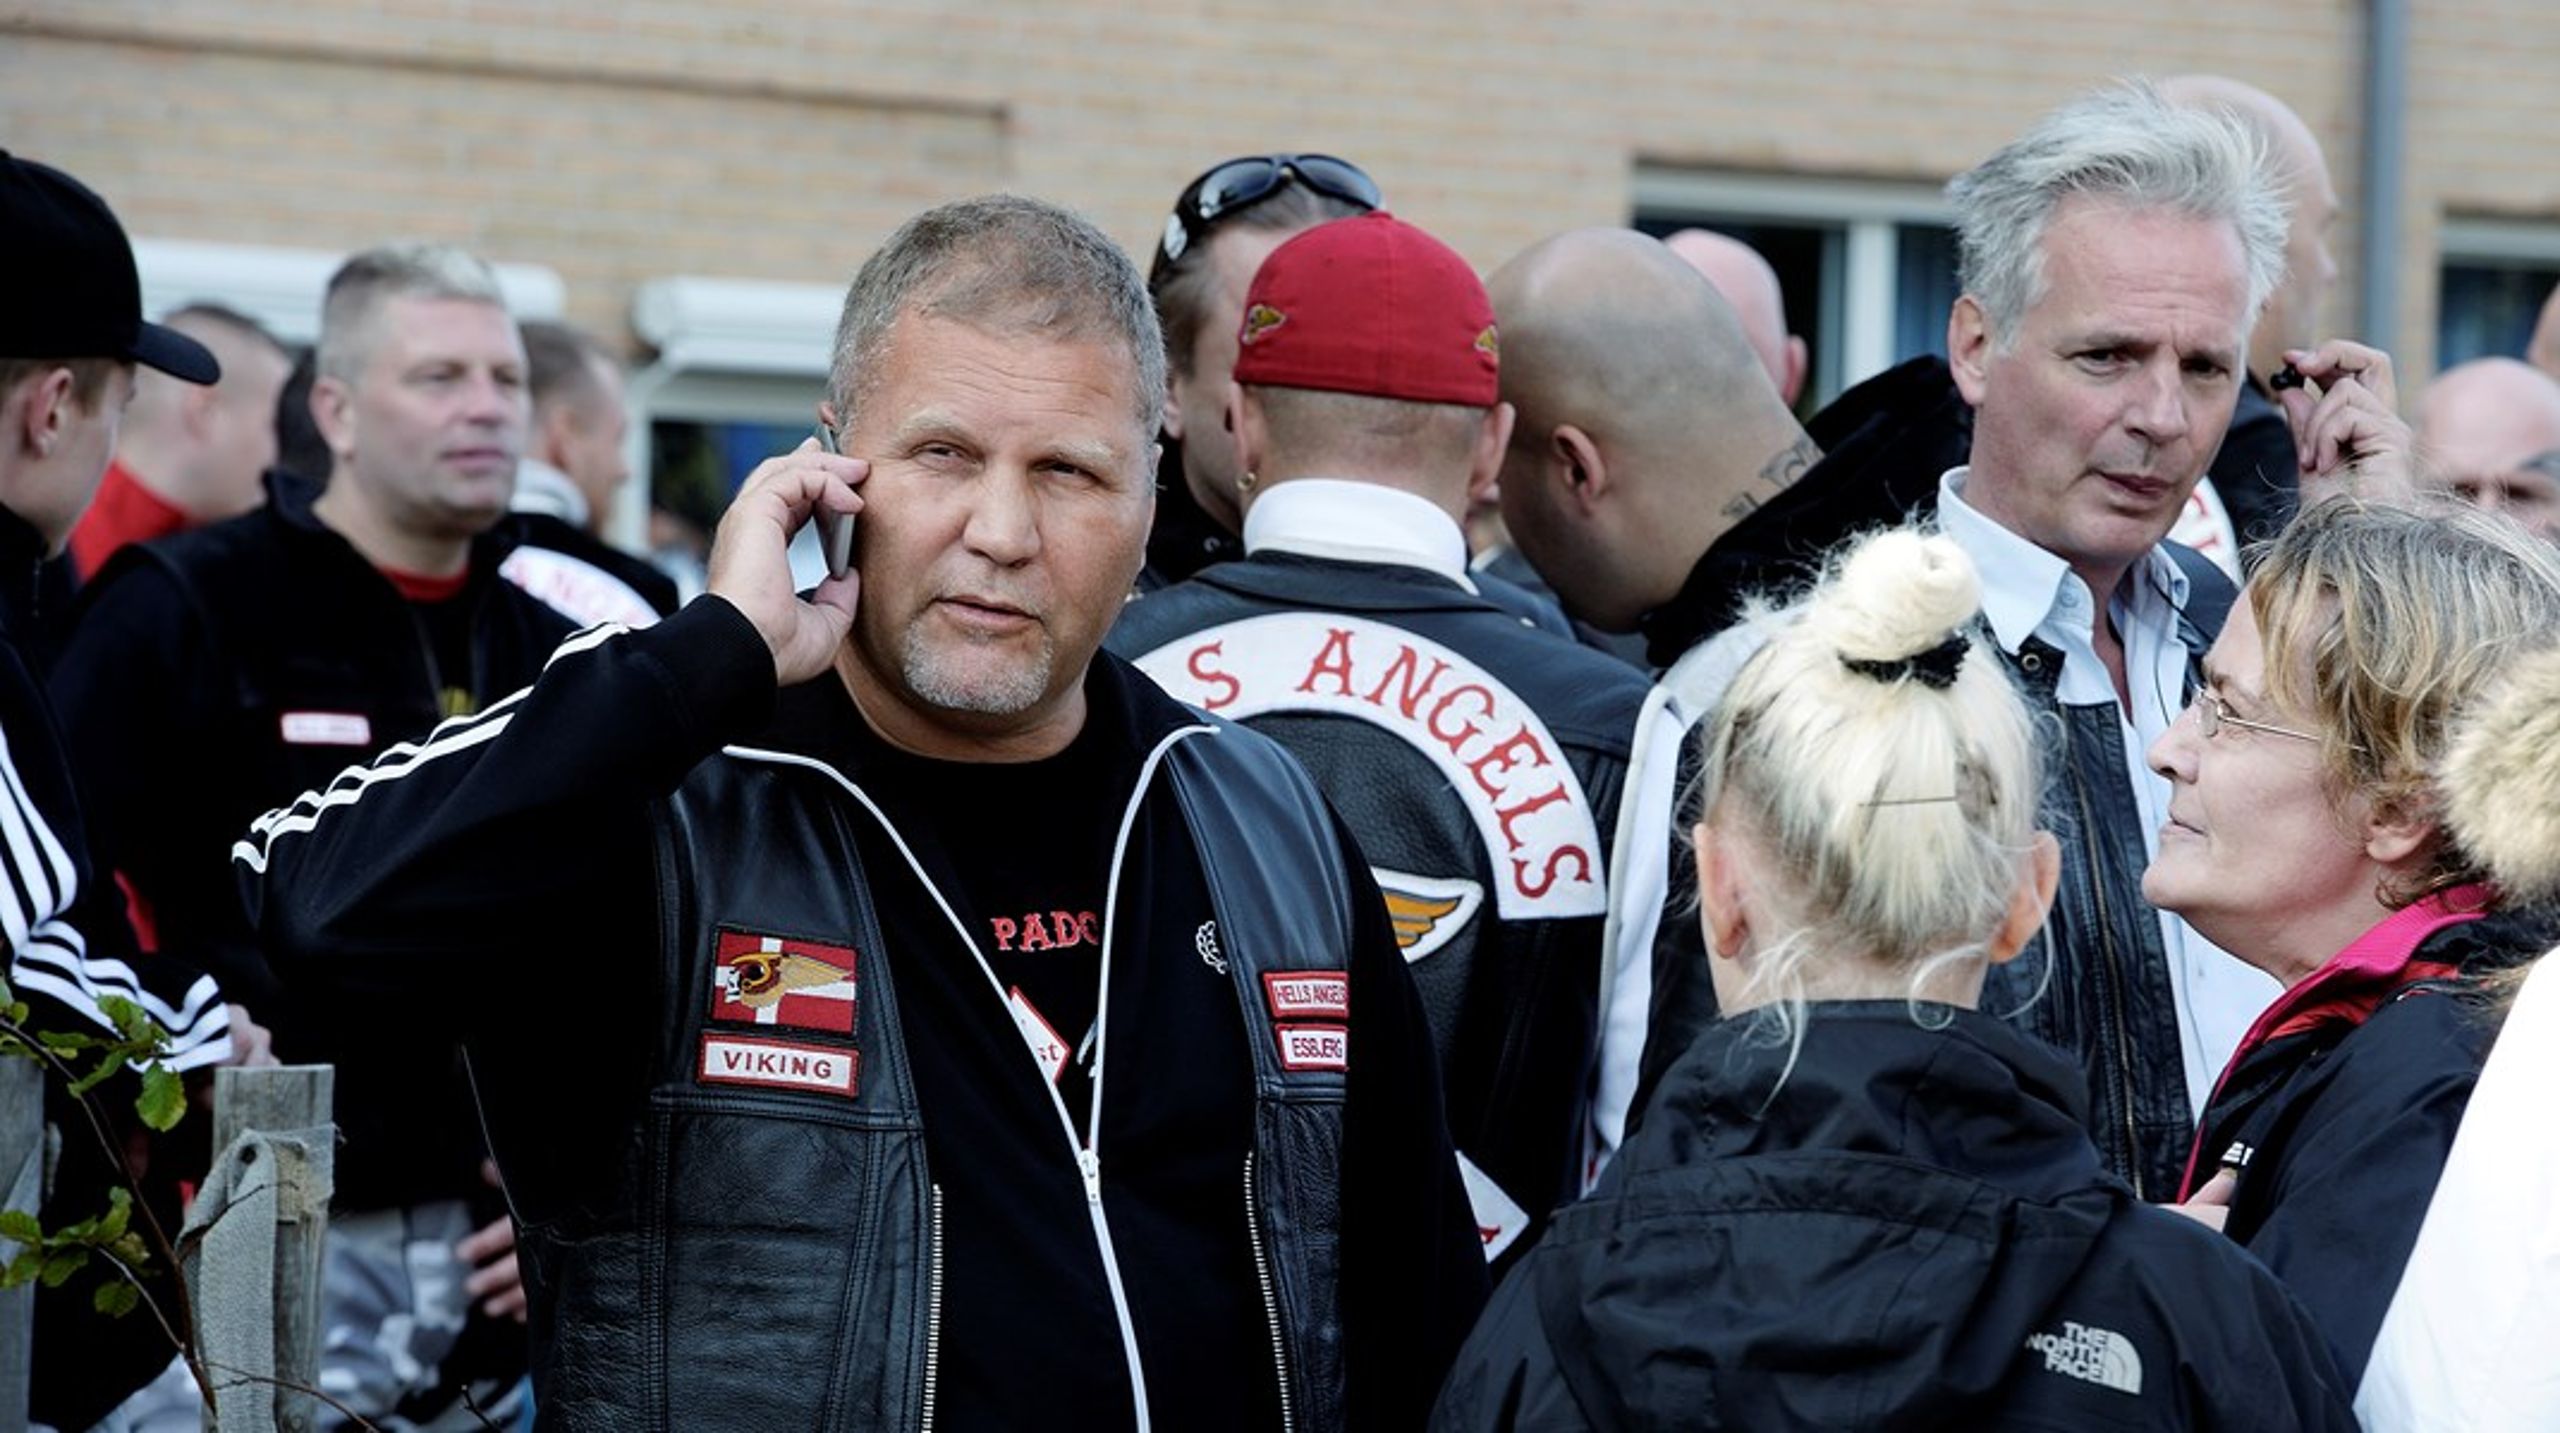 Det tidligere HA-medlem har været involveret i flere volds- og drabssager, herunder drabet på Bullshit-rocker Henning Norbert Knudsen alias 'Makrellen', som han er dømt for at have skudt og dræbt i 1984.